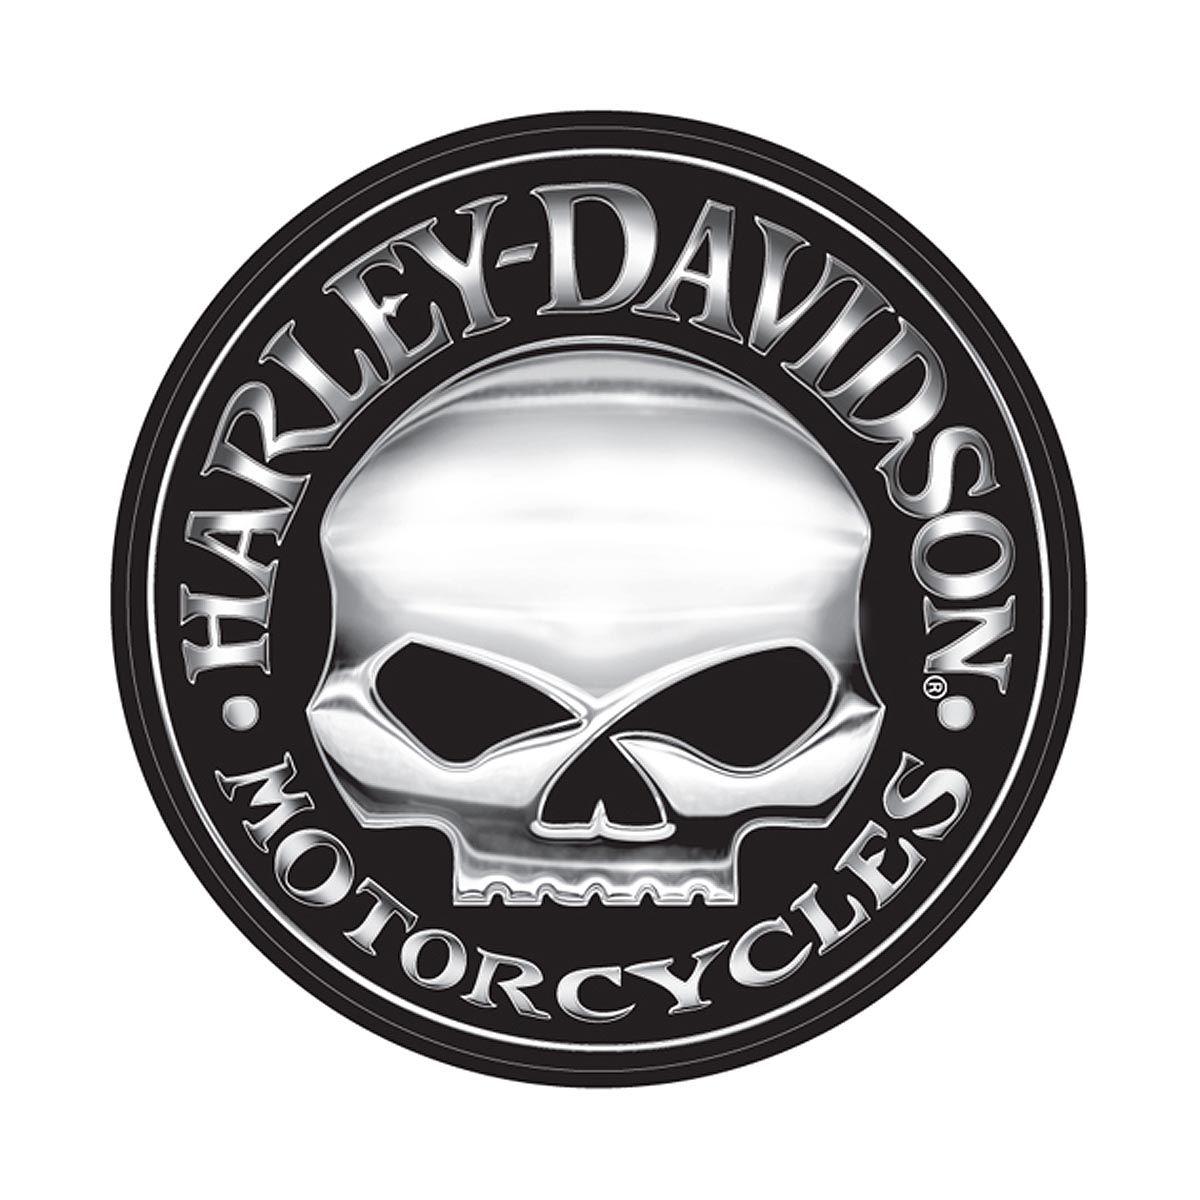 Harley-Davidson Skull Logo - Willie G. for Harley Davidson Skull Logo. Hot Harley Davidson